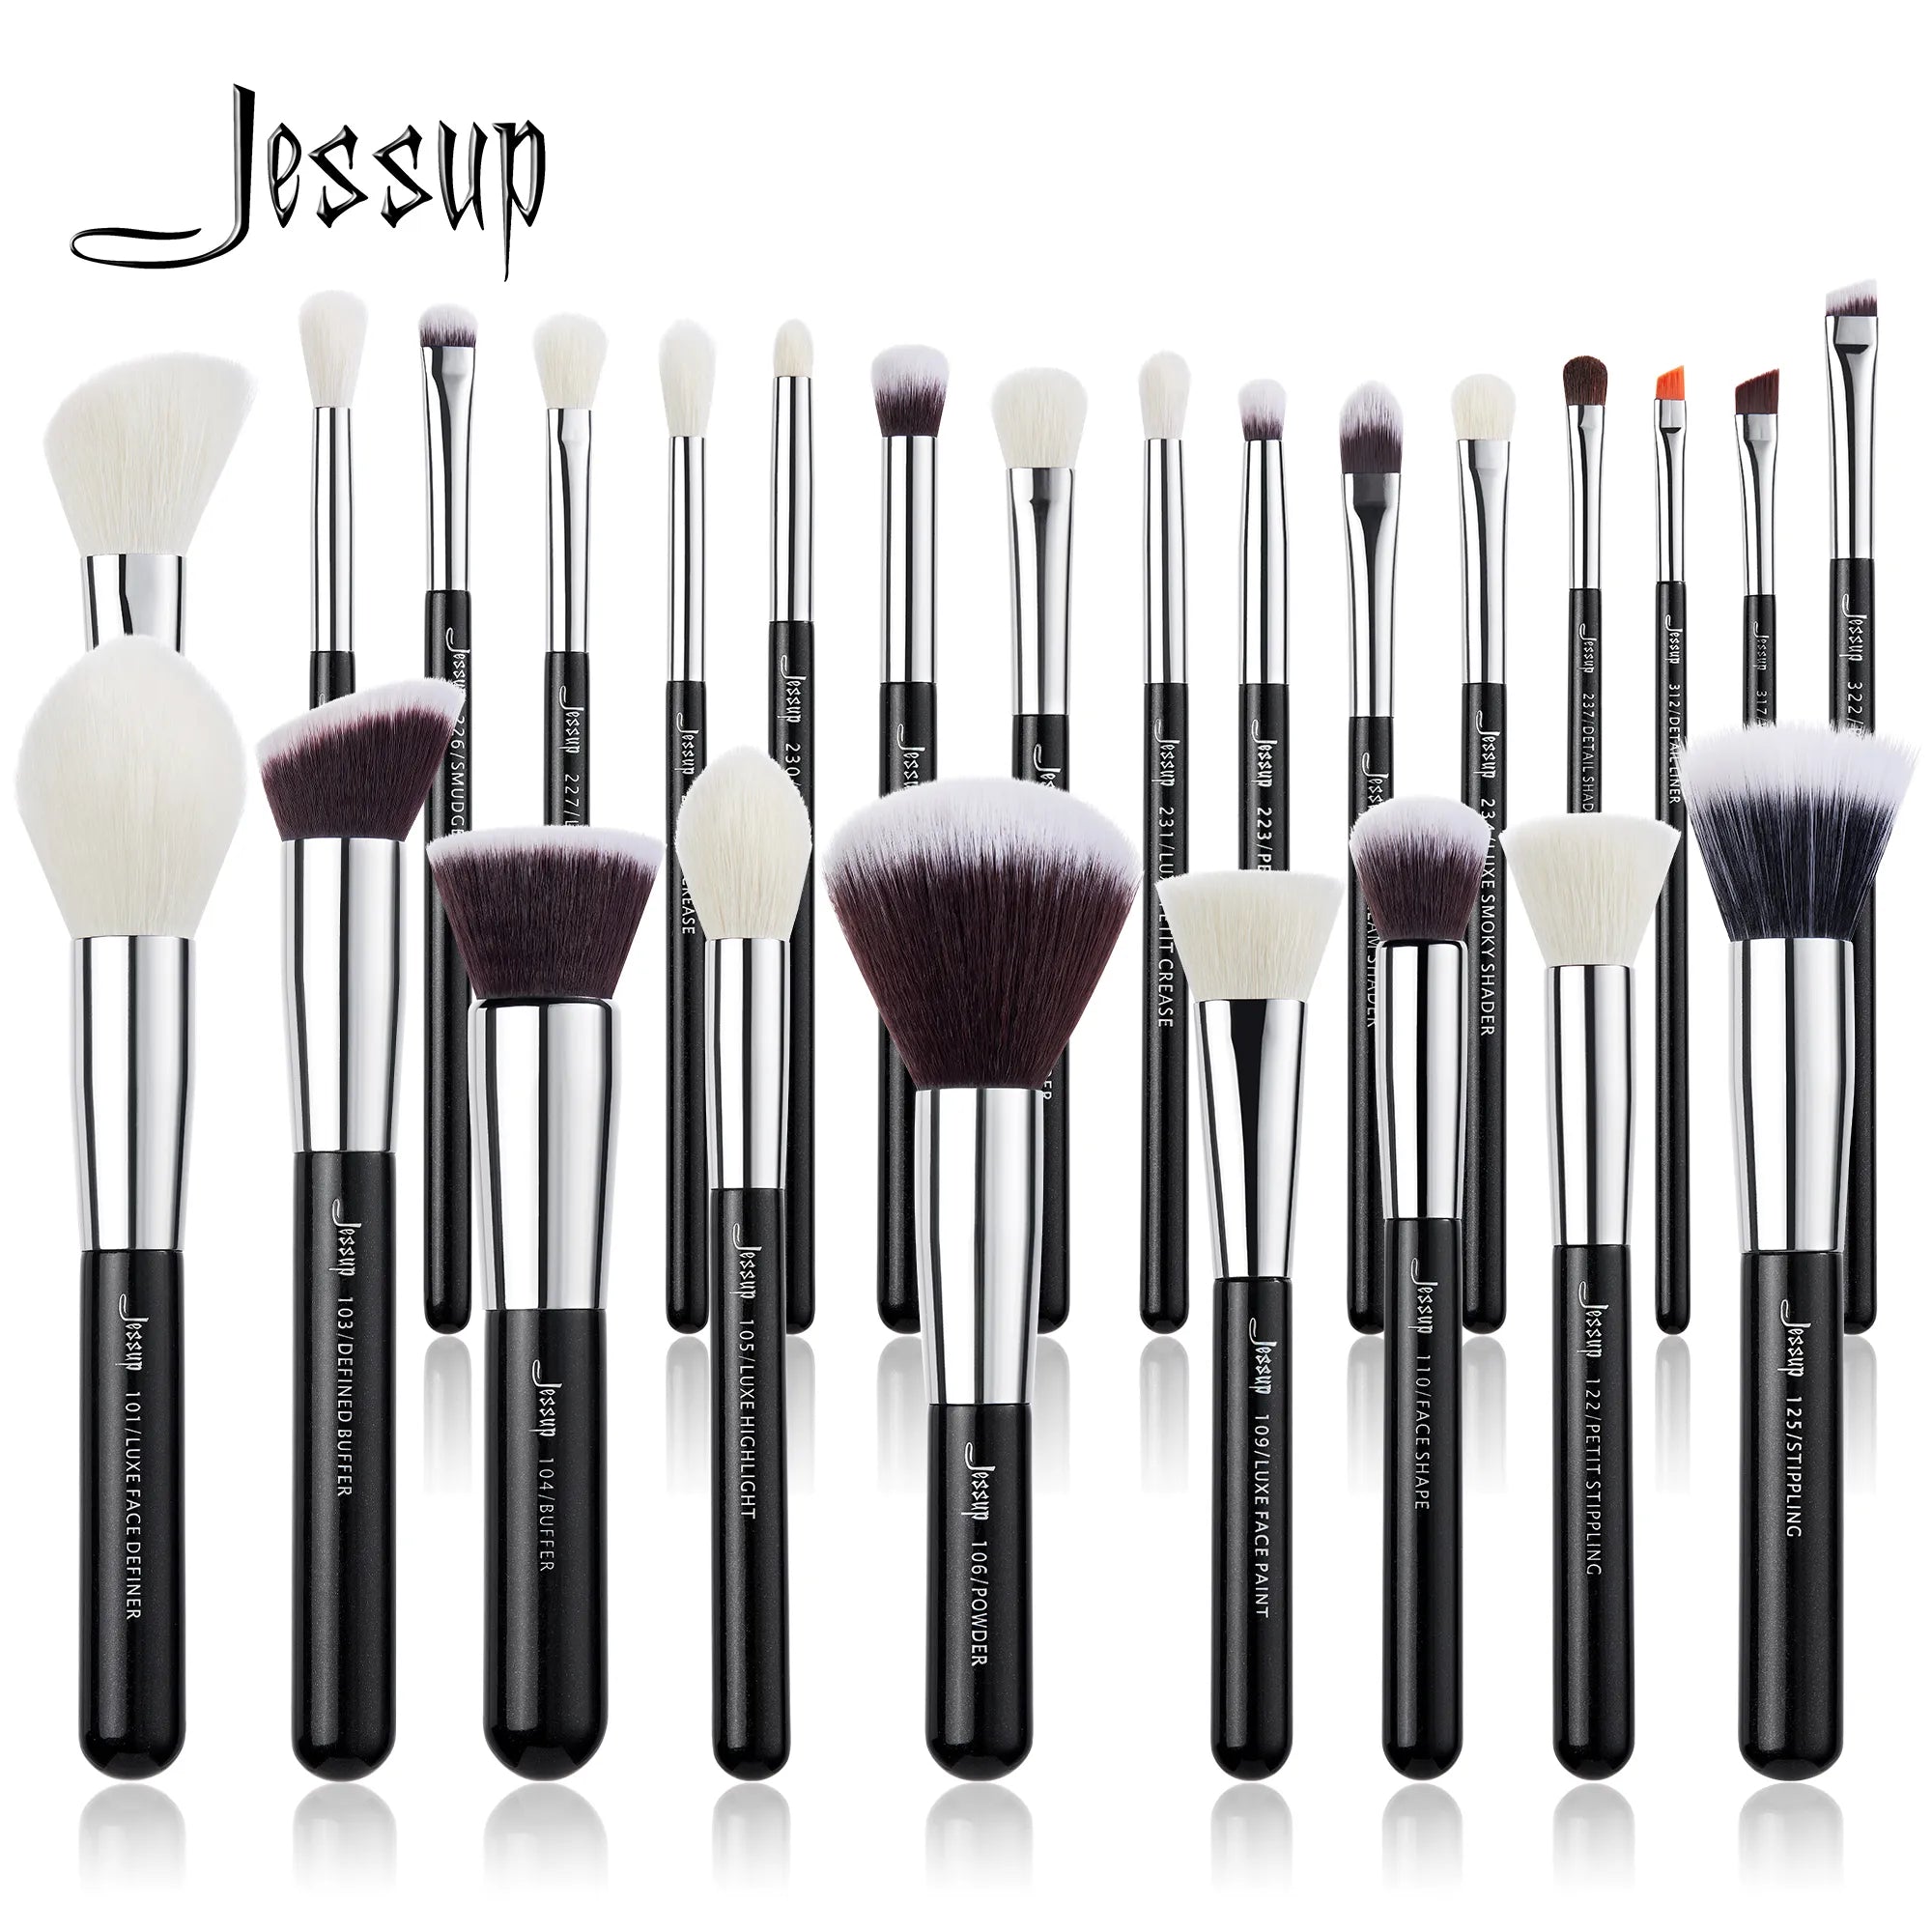 Jessup Makeup brushes 6- 25pcs Make up Brush set Professional Natural Synthetic Foundation Powder Contour Blending Eyeshadow  beautylum.com   